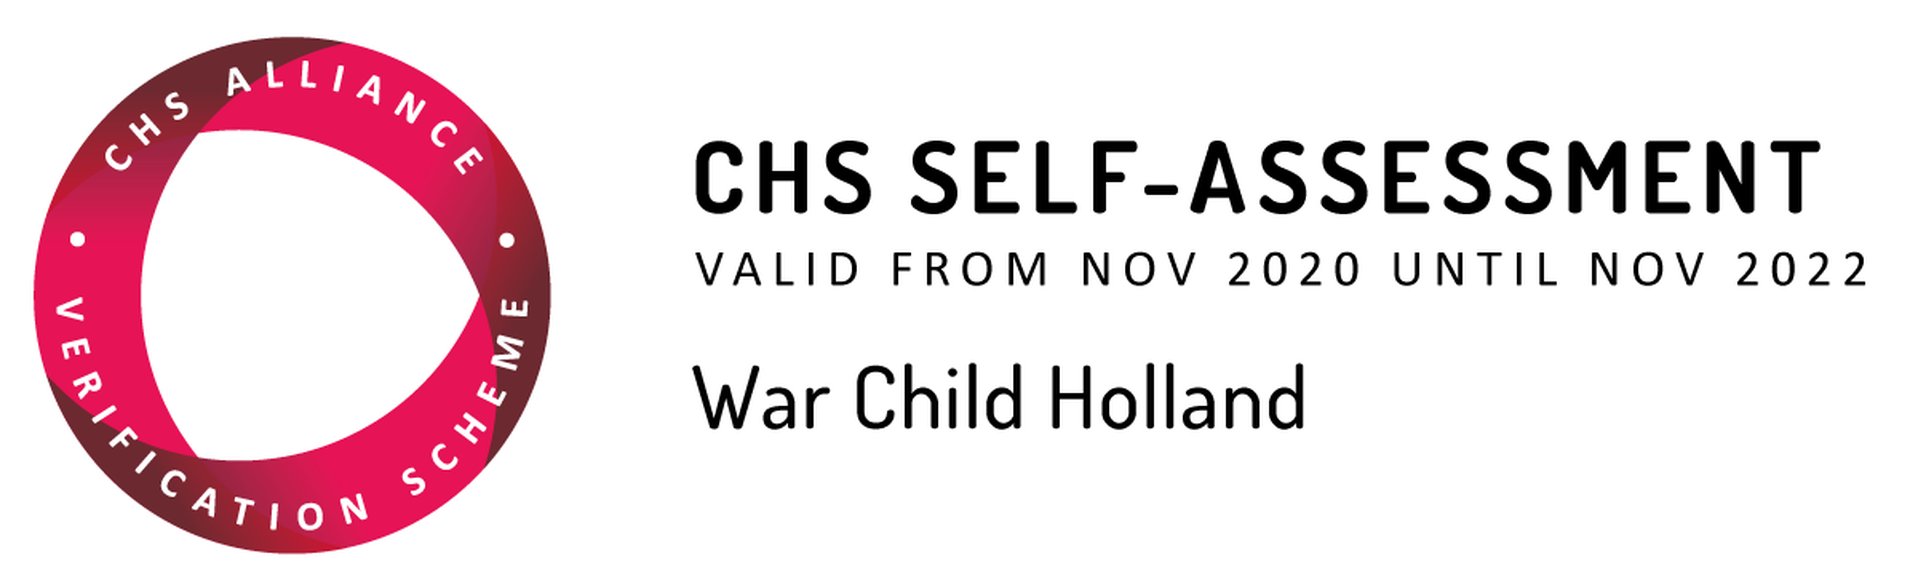 CHS Alliance - War Child Holland